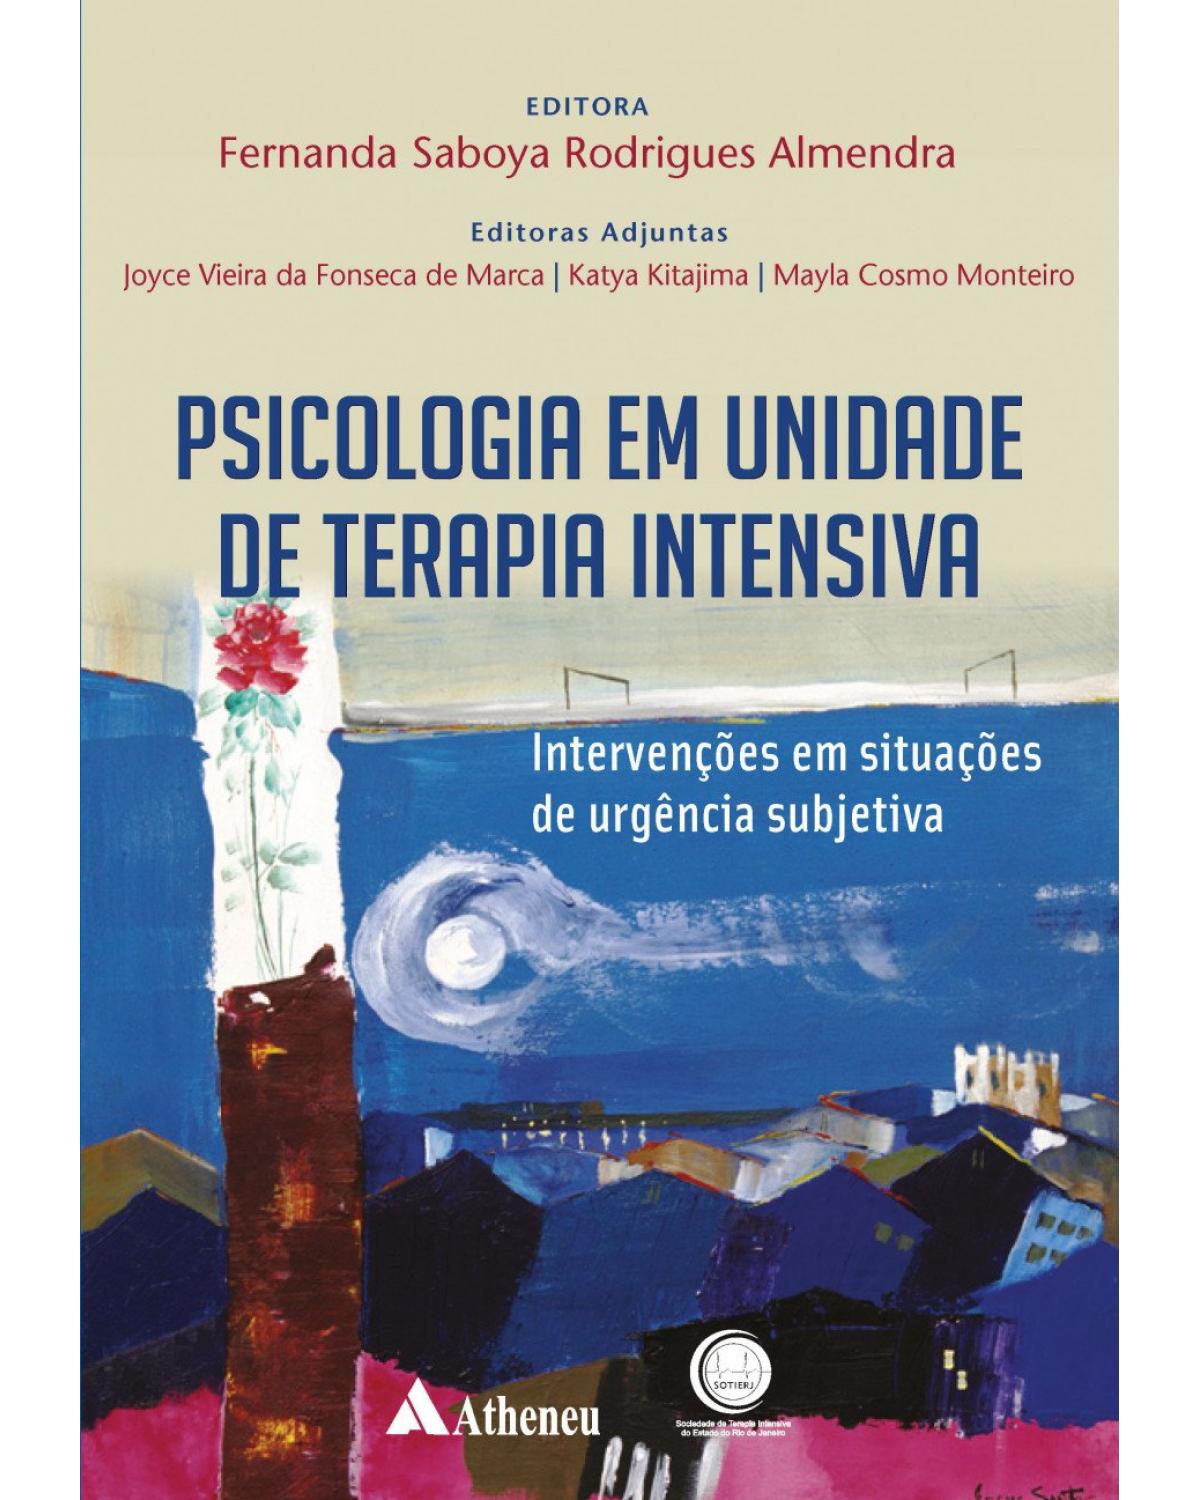 Psicologia em unidade de terapia intensiva - intervenções em situações de urgência subjetiva - 1ª Edição | 2017